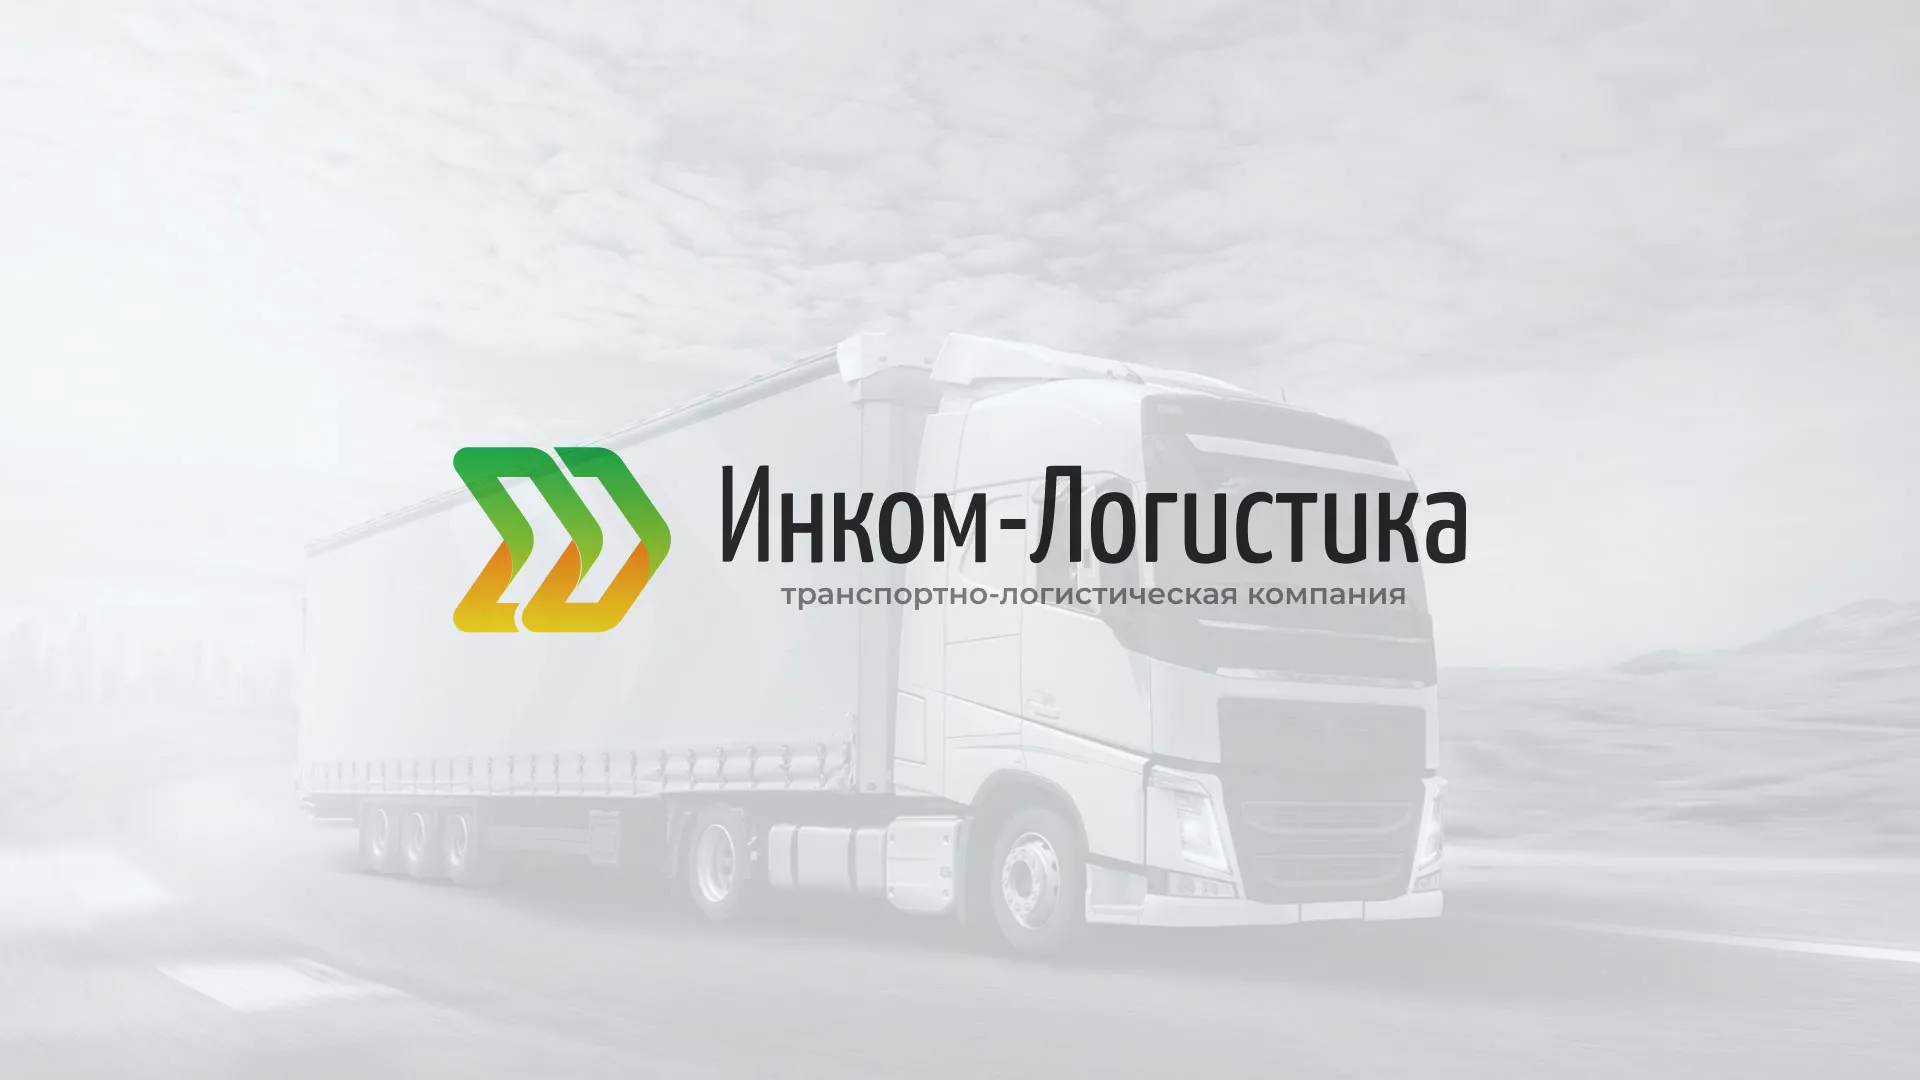 Разработка логотипа и сайта компании «Инком-Логистика» в Железноводске